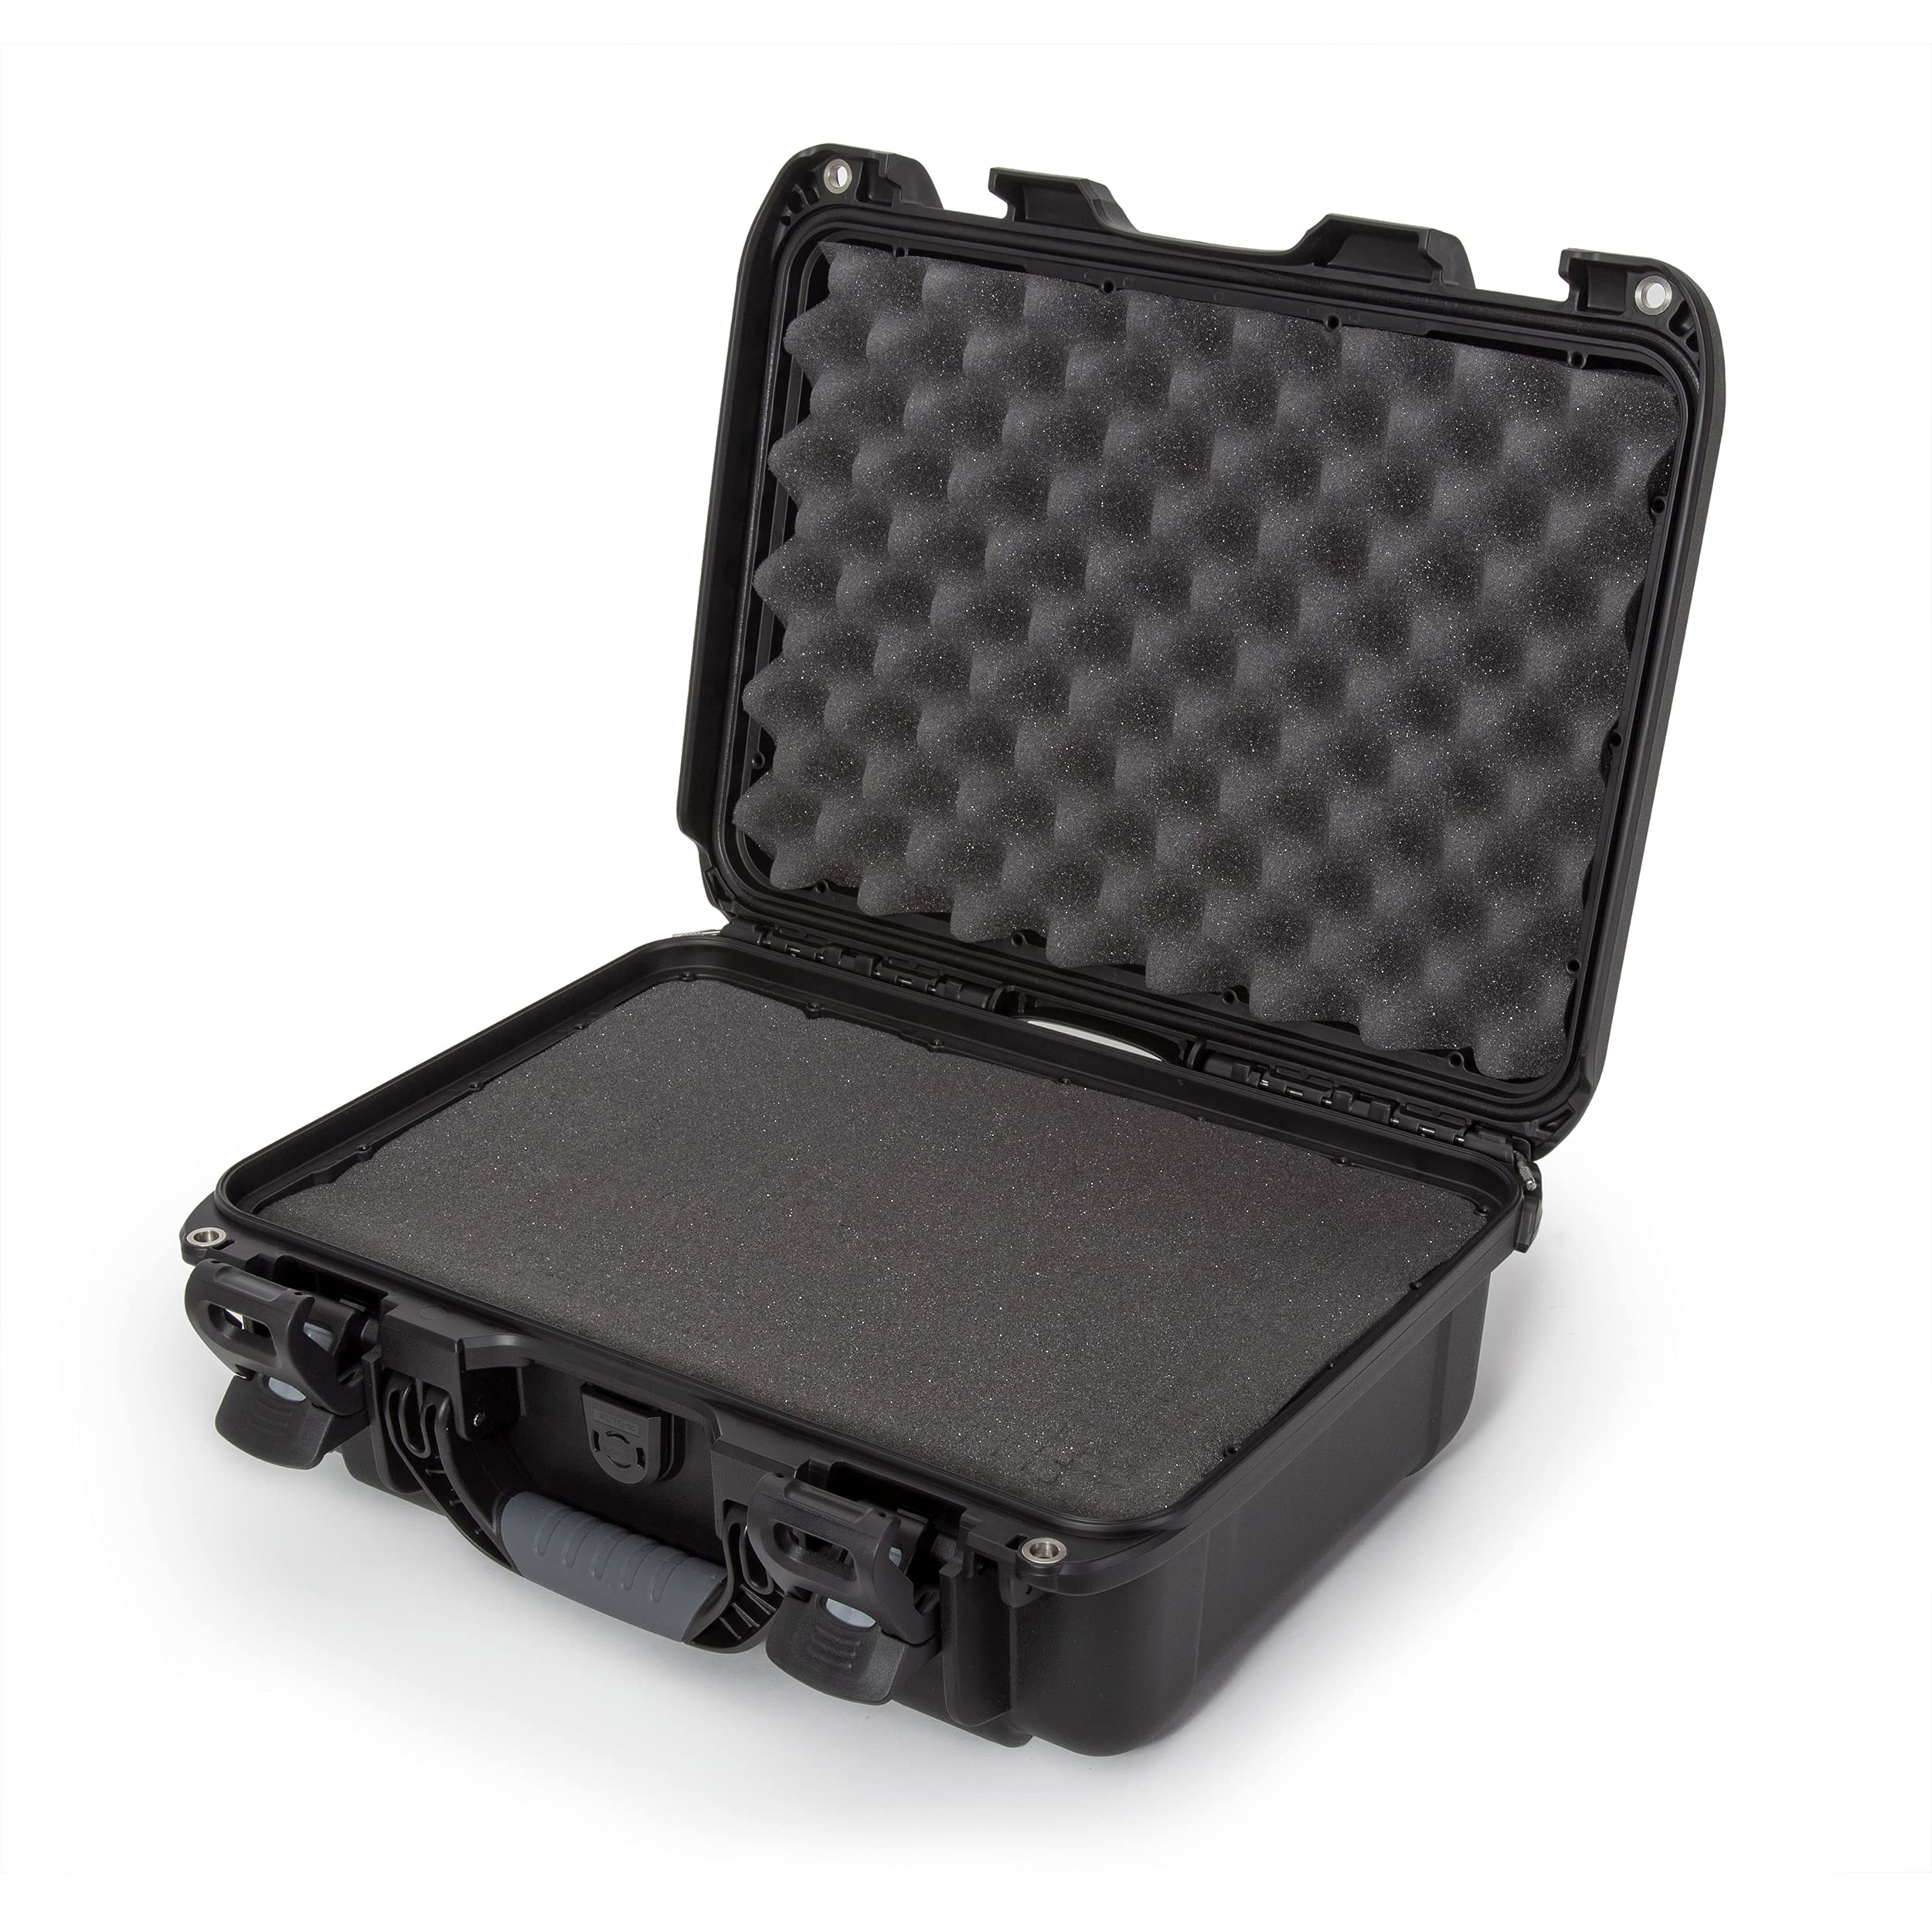 Nanuk 920 Waterproof Hard Case with Foam Insert - Black